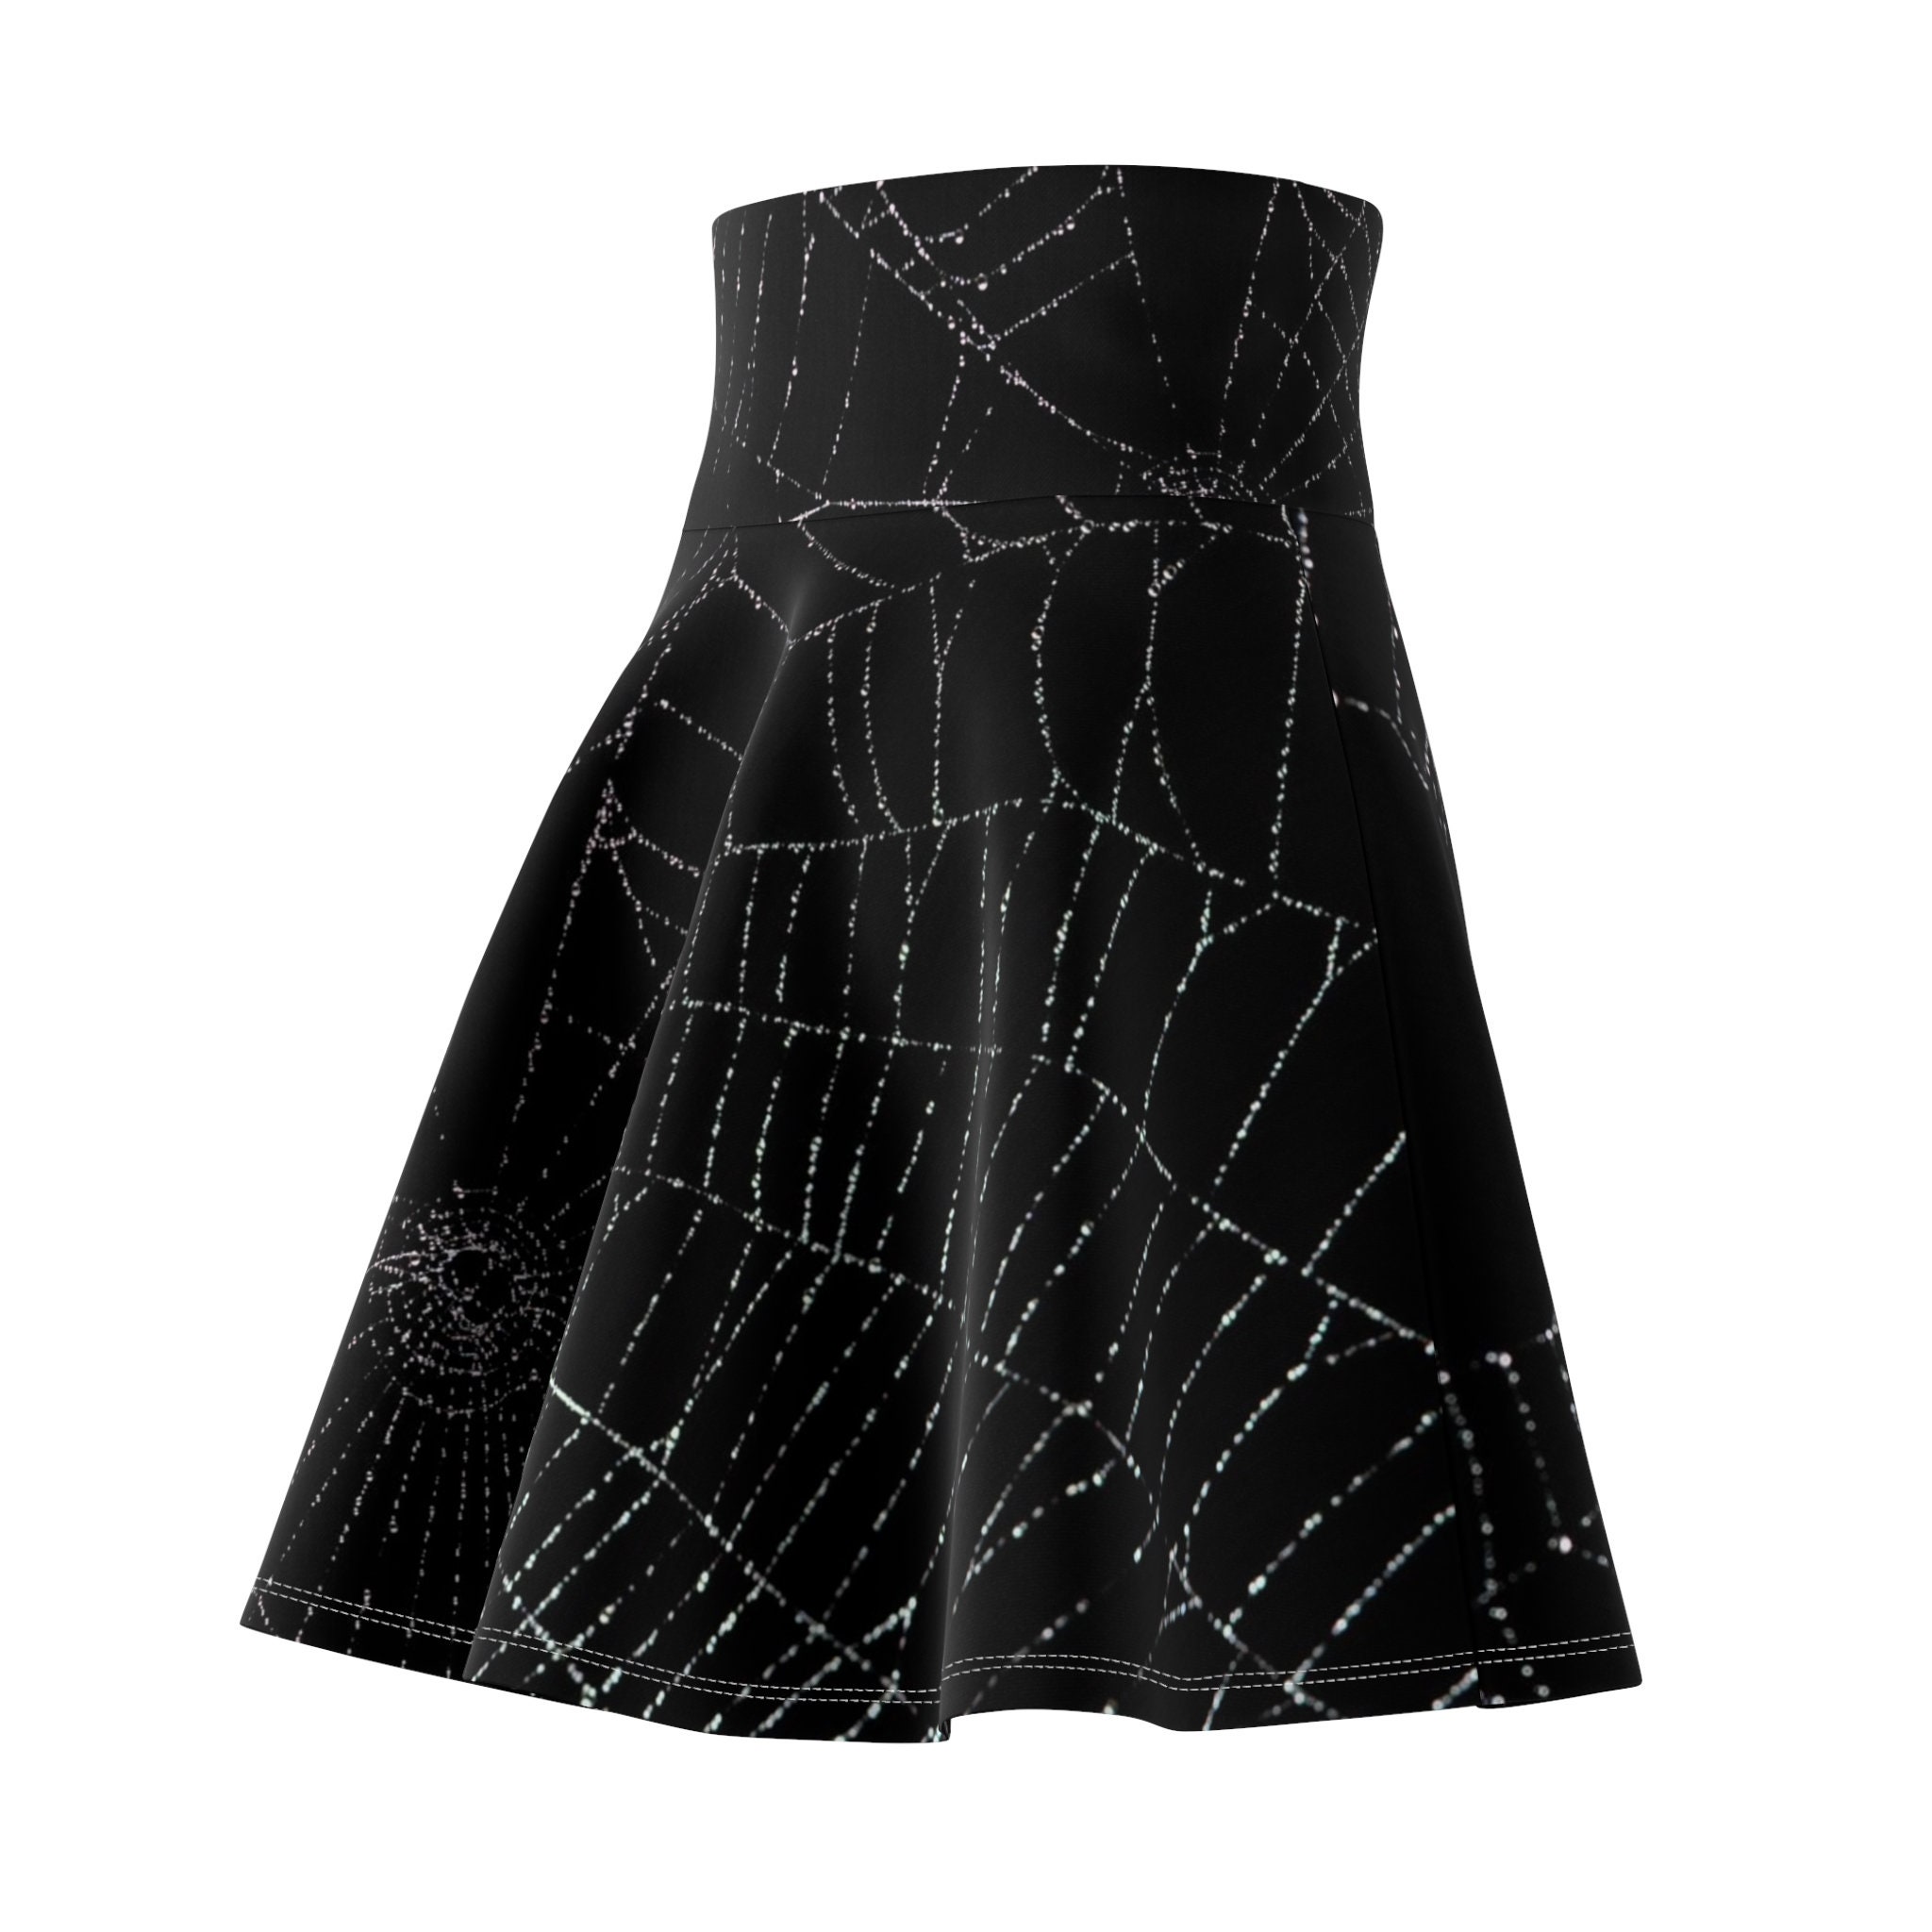 Spiderweb Punk Goth Skater Skirt, Women's Skater Skirt